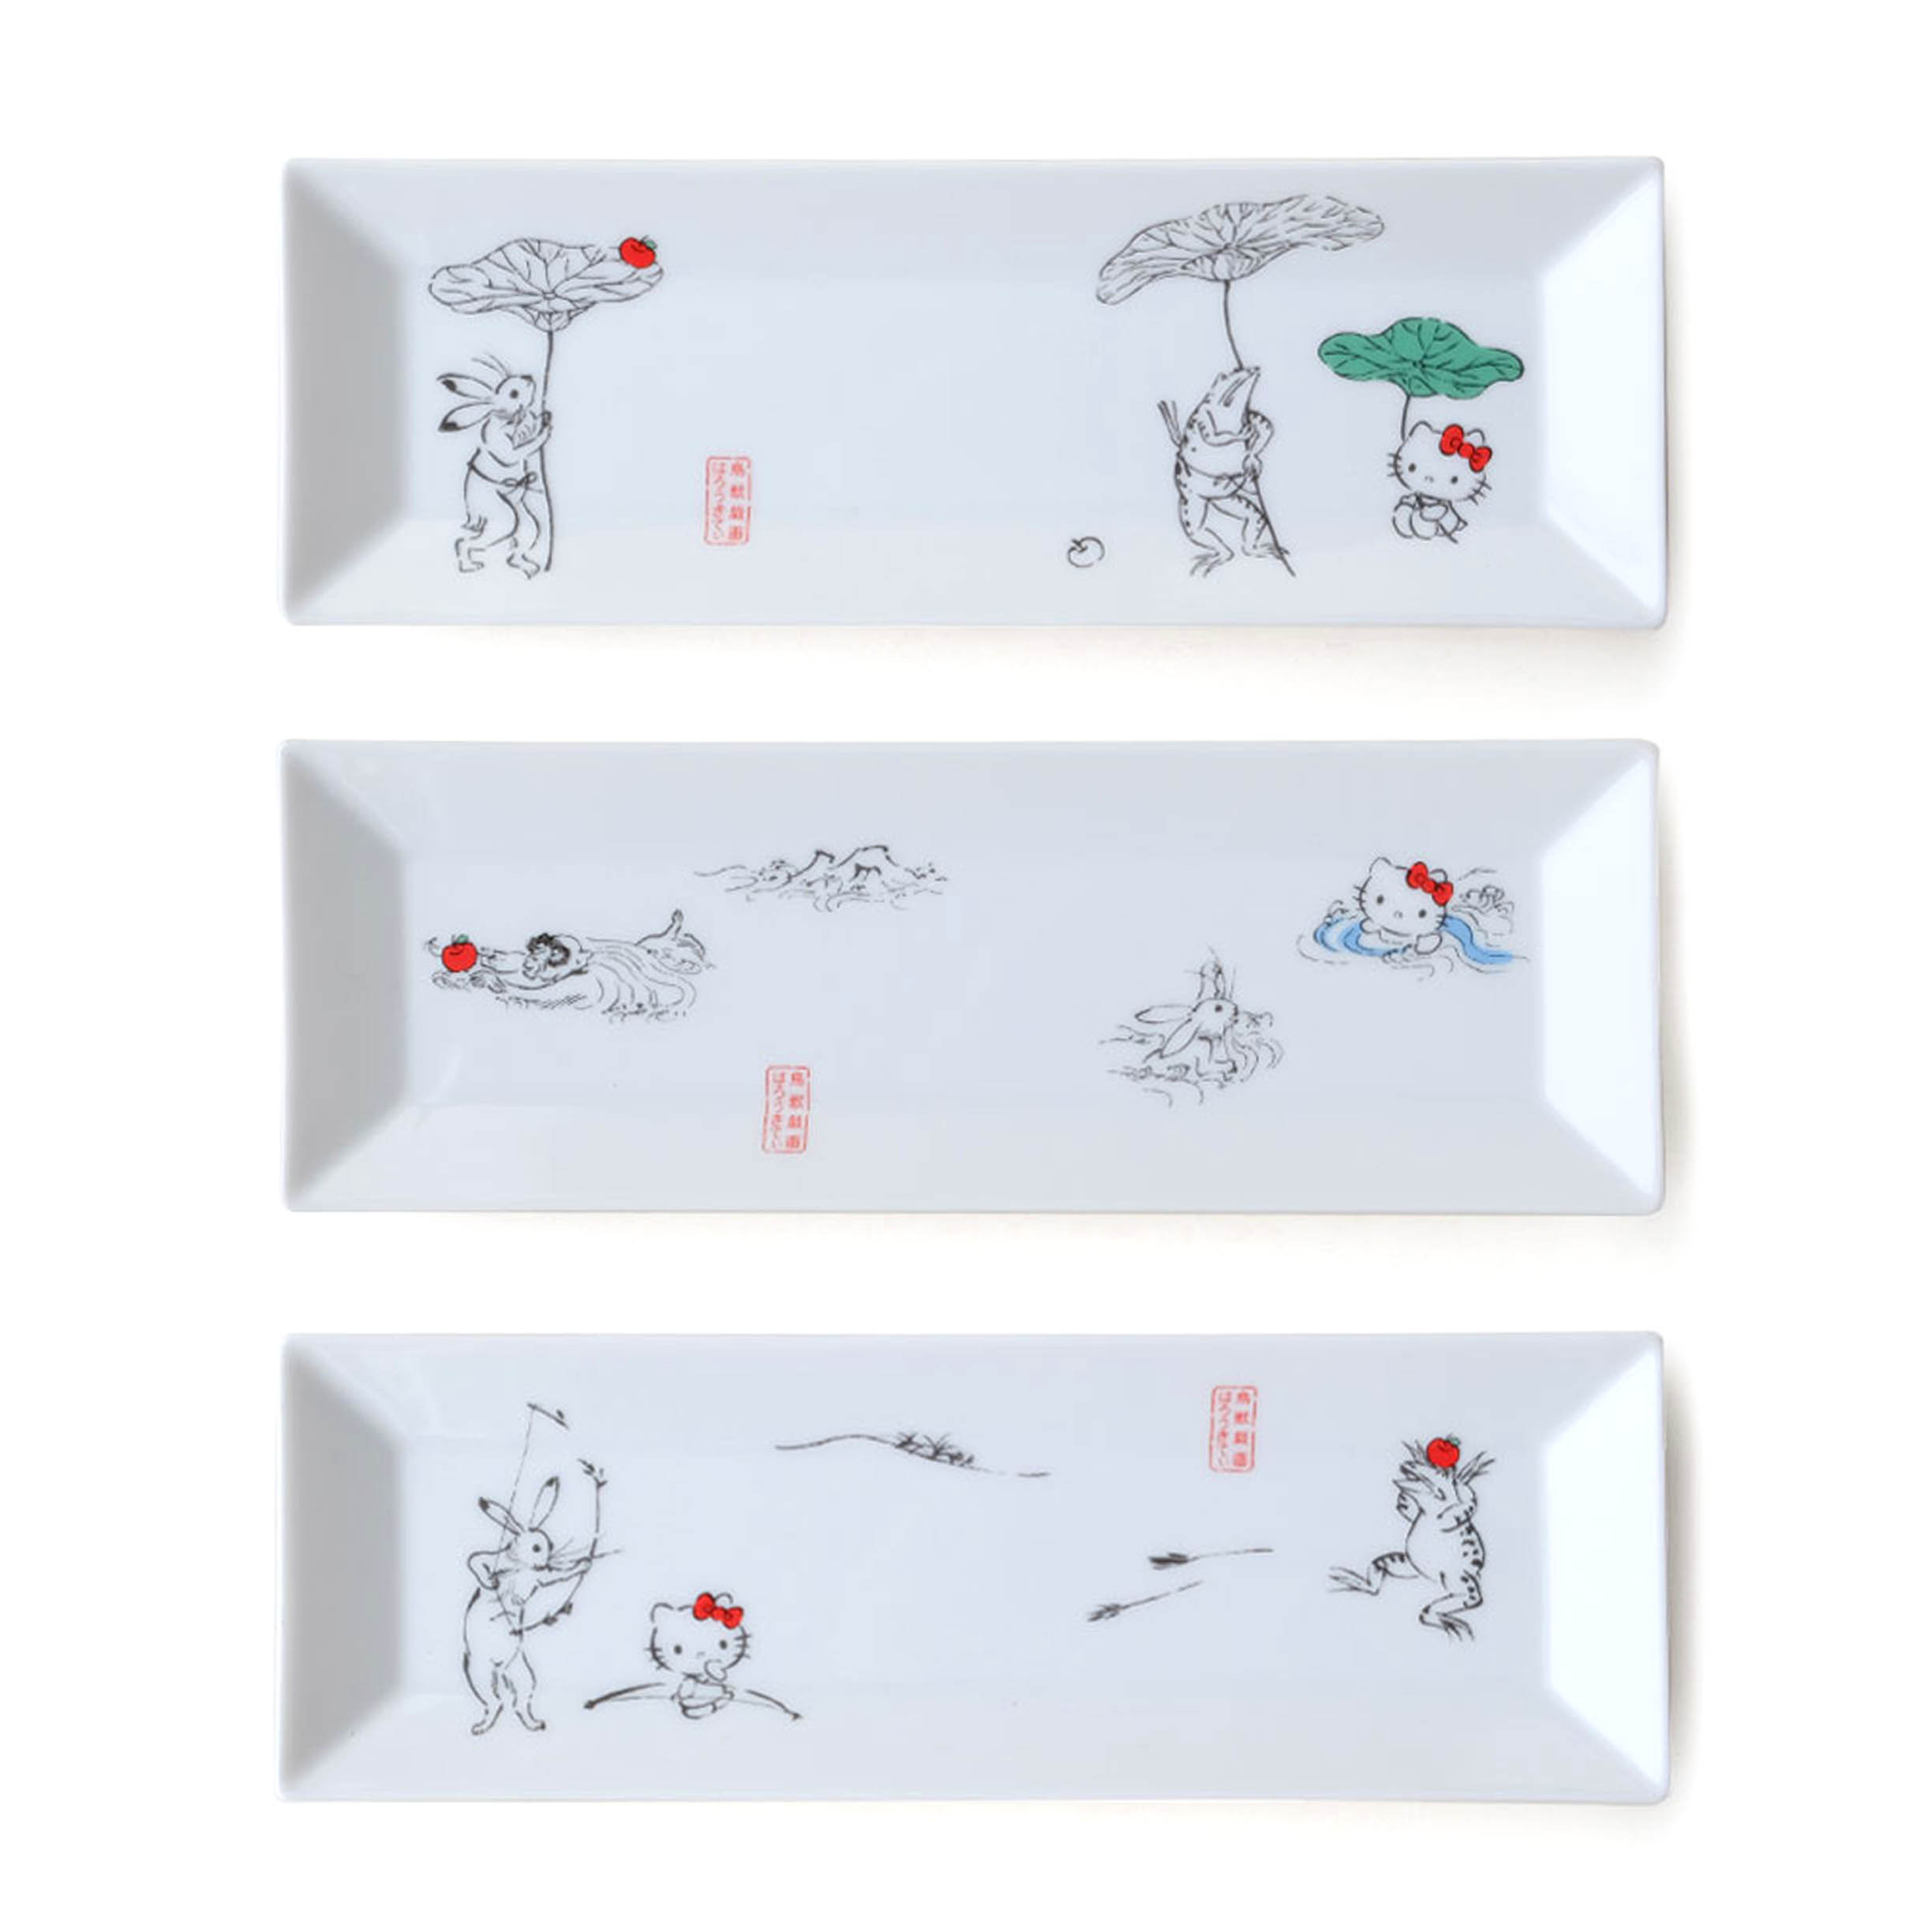 長形盤 日本  sanrio凱蒂貓 弓遊び 水遊び 蓮の傘 ハローキティ鳥獸戲畫 HELLO KITTY  日本進口正版授權